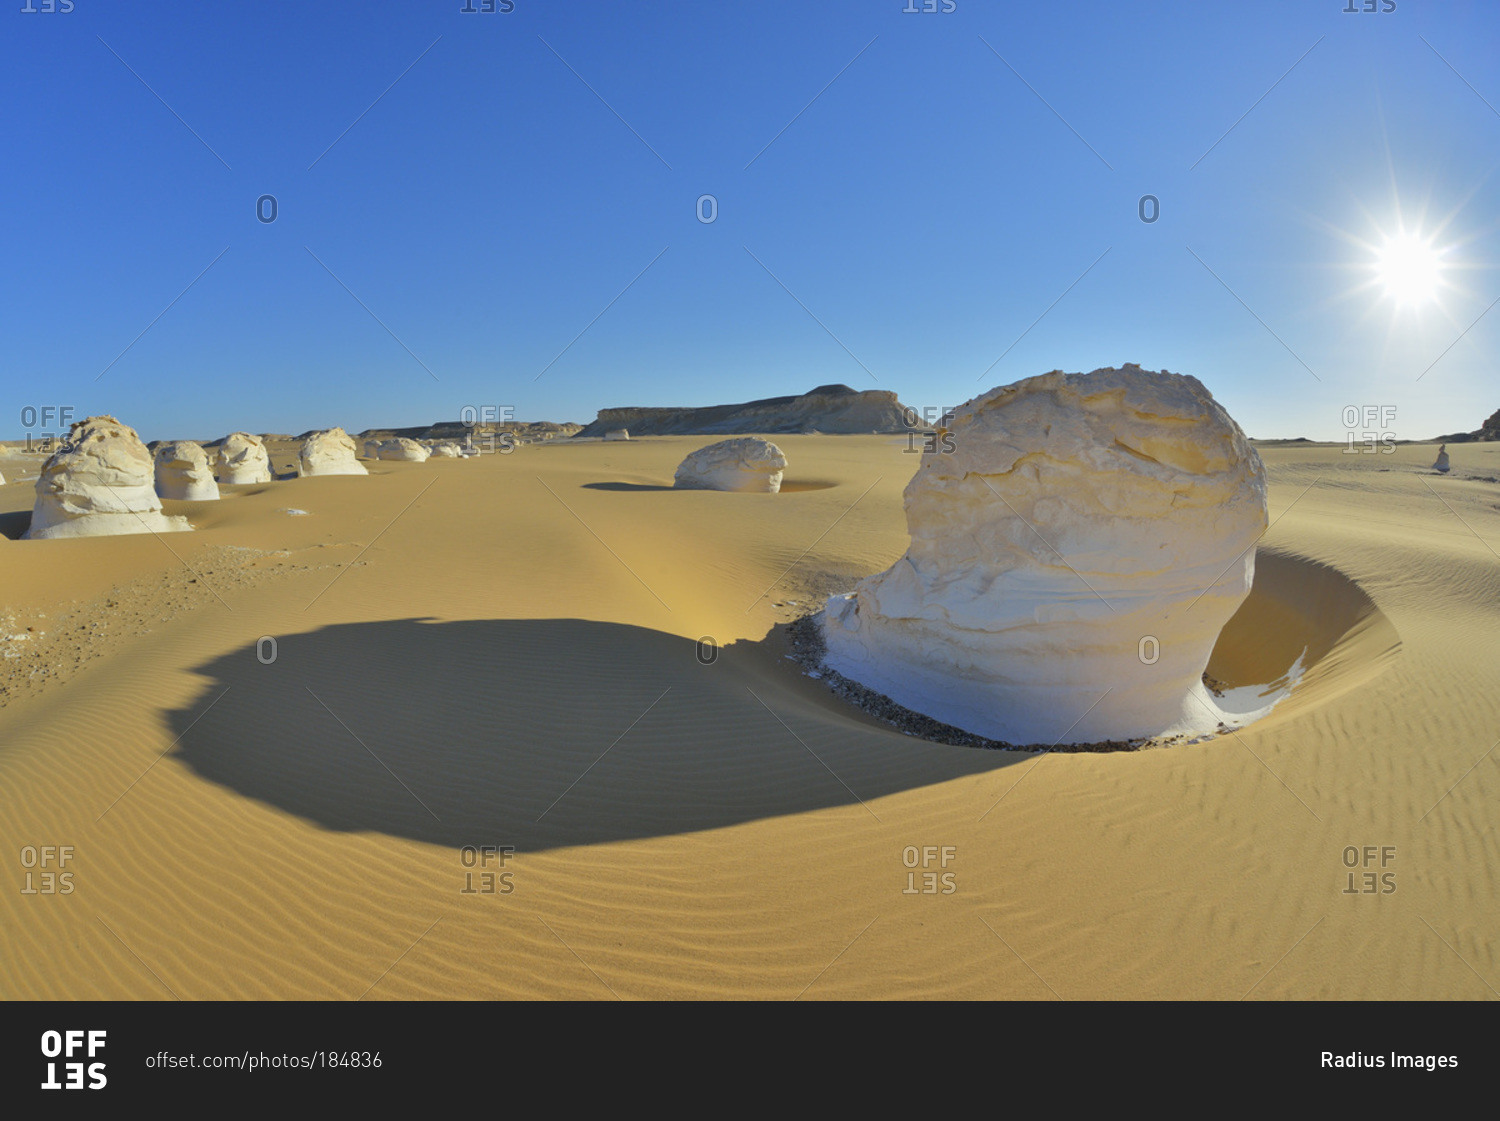 Sun over rock formations in White Desert, Sahara Desert